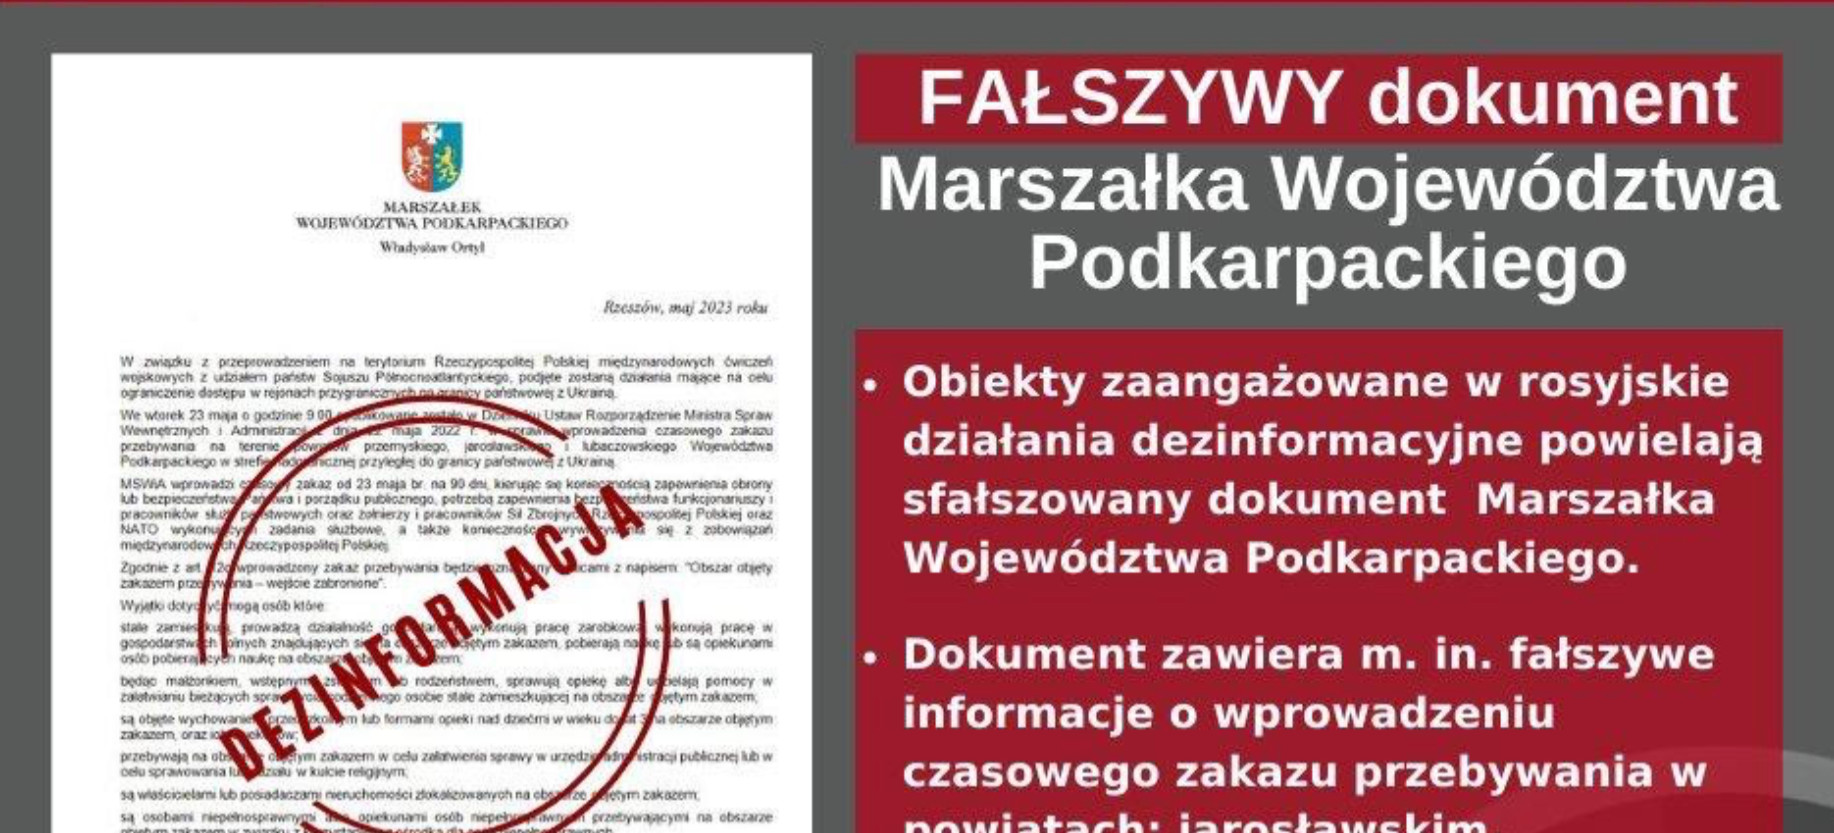 PODKARPACIE. UWAGA! FAŁSZYWY dokument Marszałka Województwa Podkarpackiego. Komunikat RCB